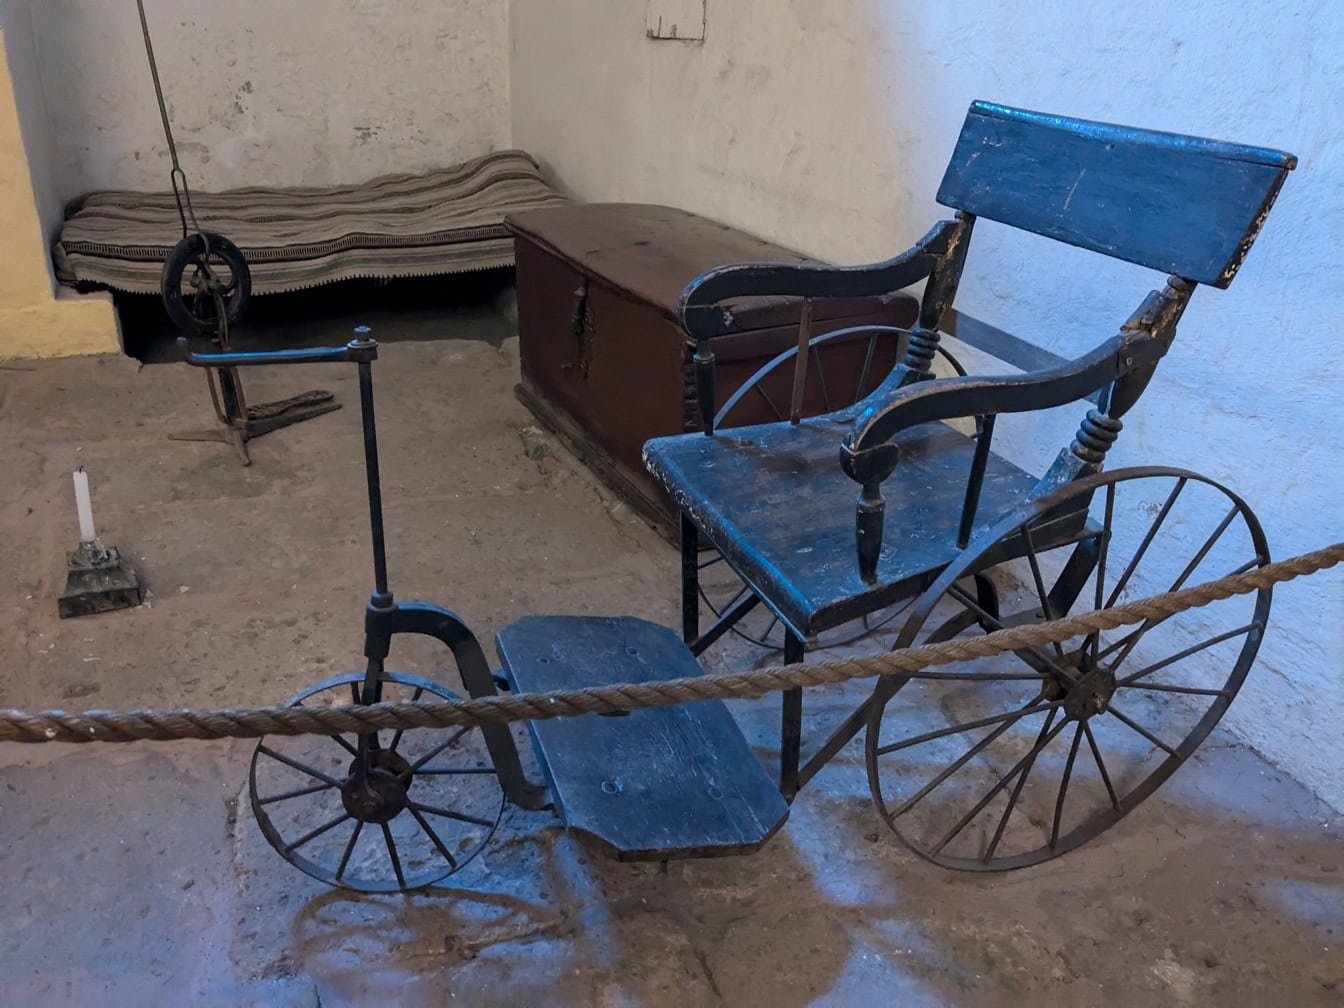 Antiguo triciclo-silla de ruedas medieval hecho a mano en el museo